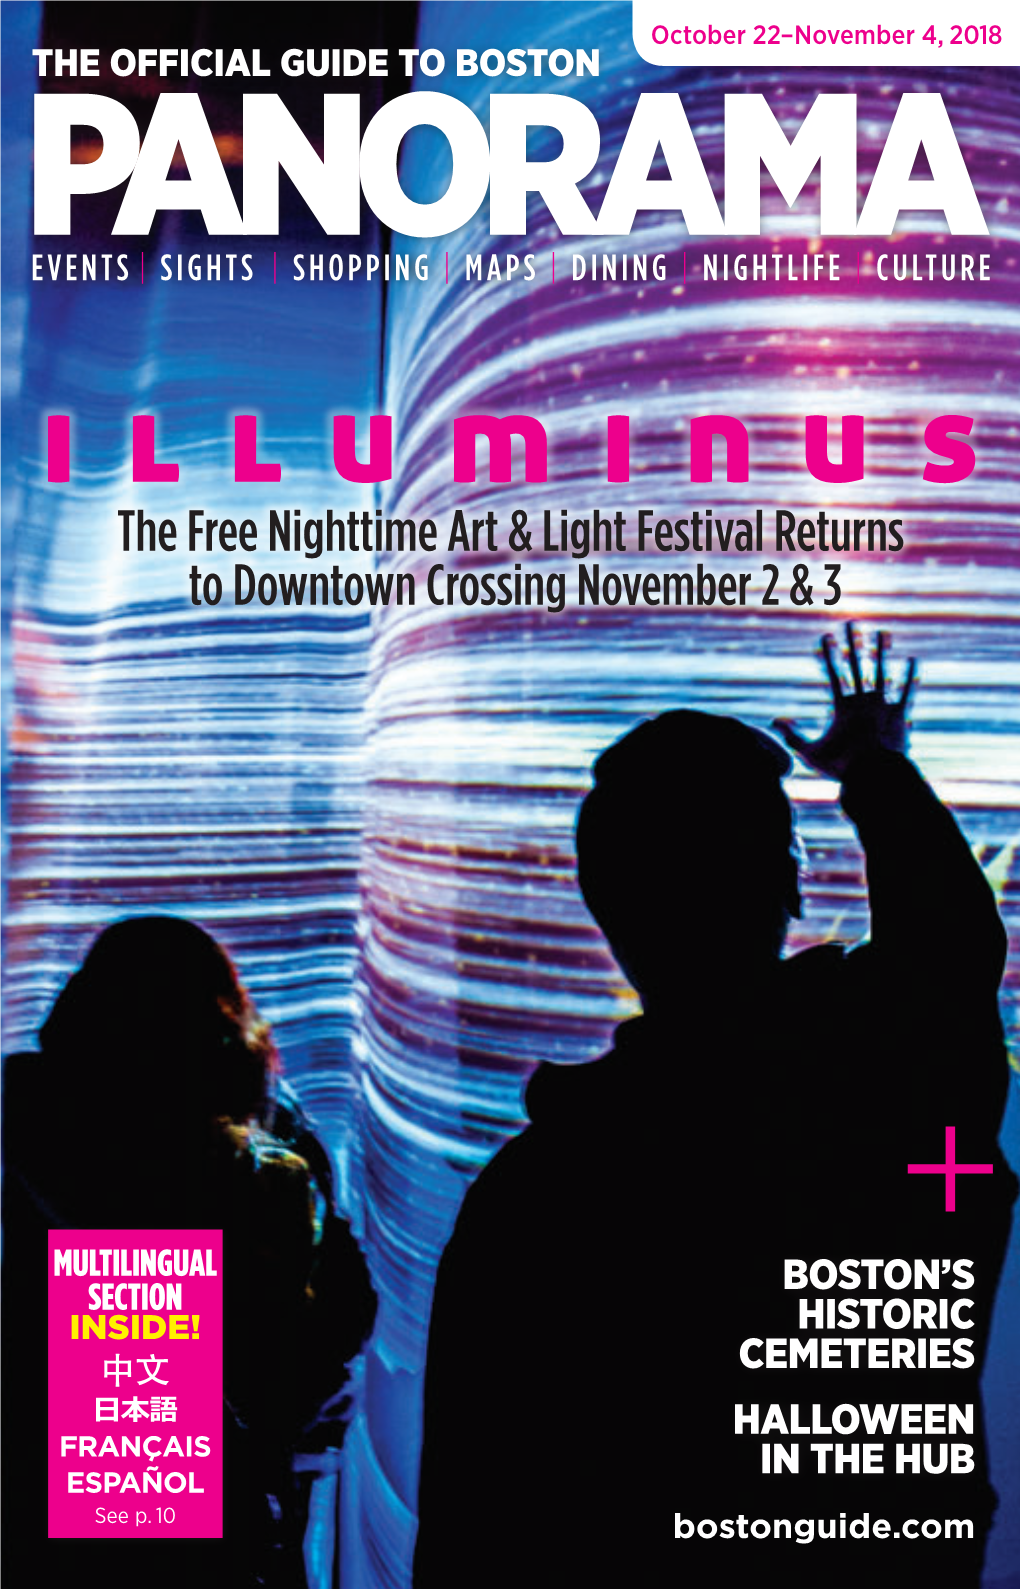 The Free Nighttime Art & Light Festival Returns To